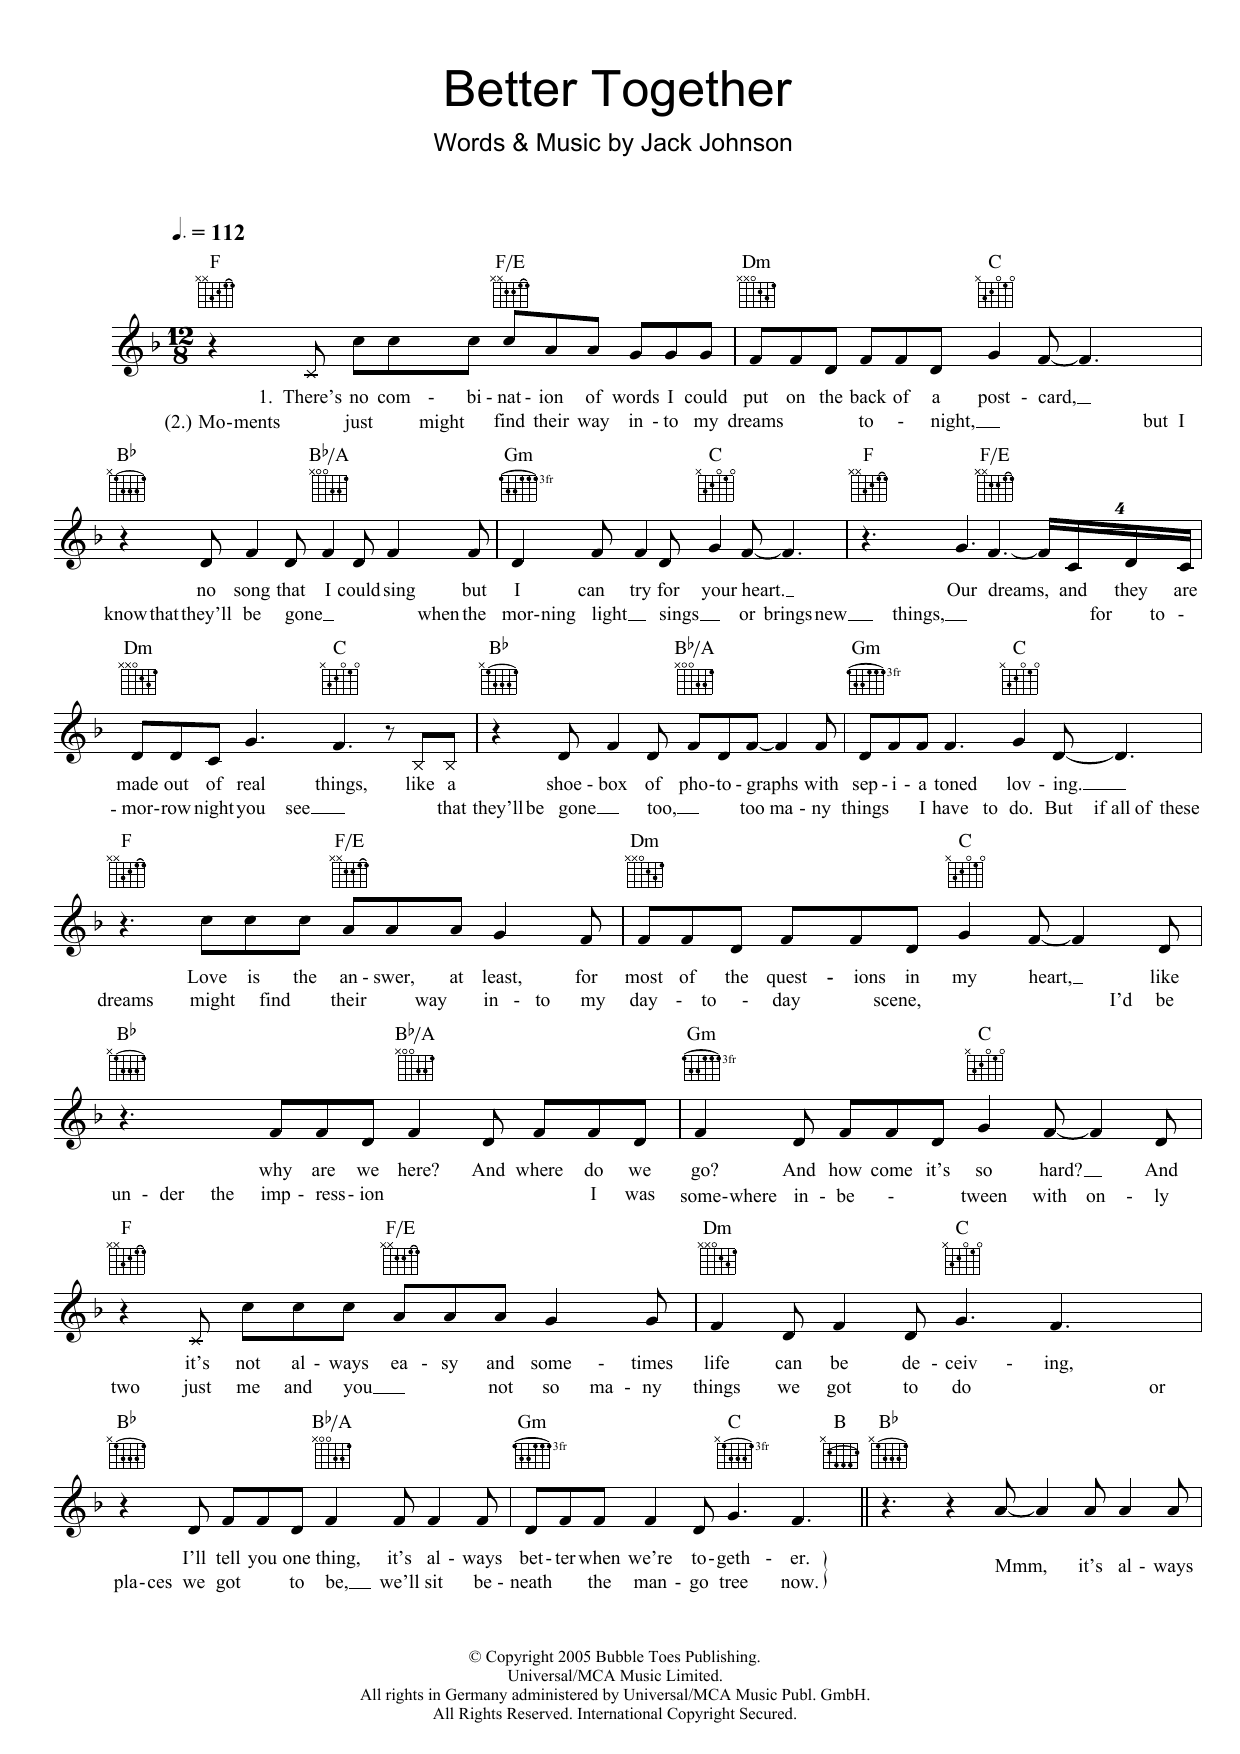 Jack Johnson Better Together Sheet Music Notes & Chords for Ukulele Lyrics & Chords - Download or Print PDF